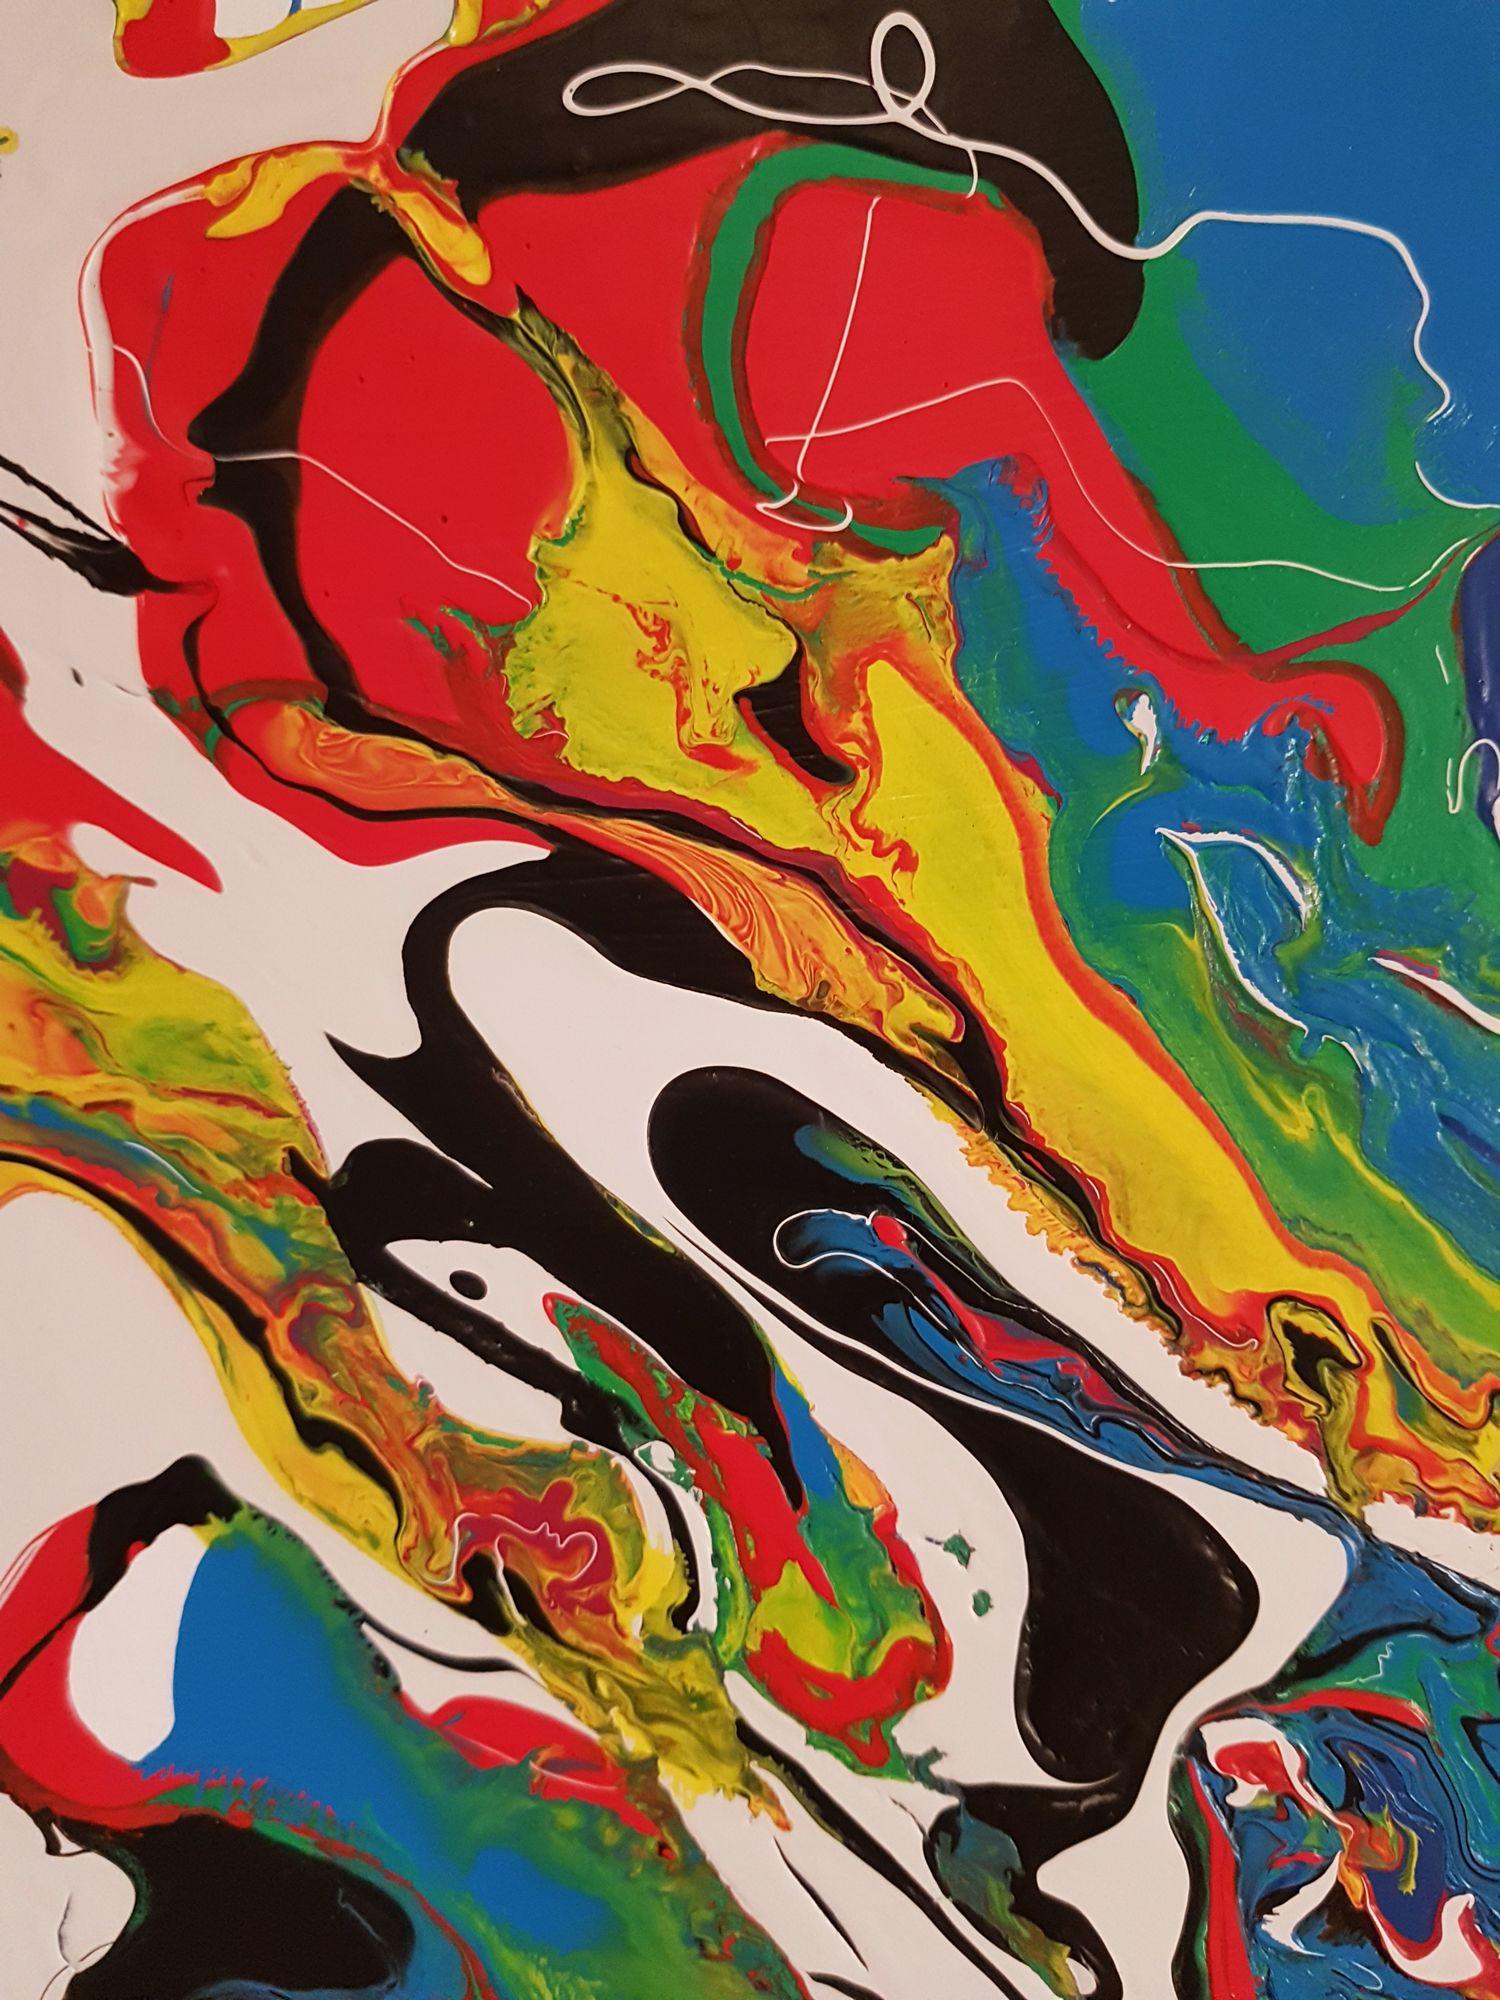 Fließende Bewegungen, einzigartige Texturen und herrliche Blautöne interagieren in diesem großen abstrakten expressionistischen Gemälde mit Weiß, Grün, Gelb, Rot und Schwarz. Eine speziell angefertigte Holzleinwand wurde mit 3